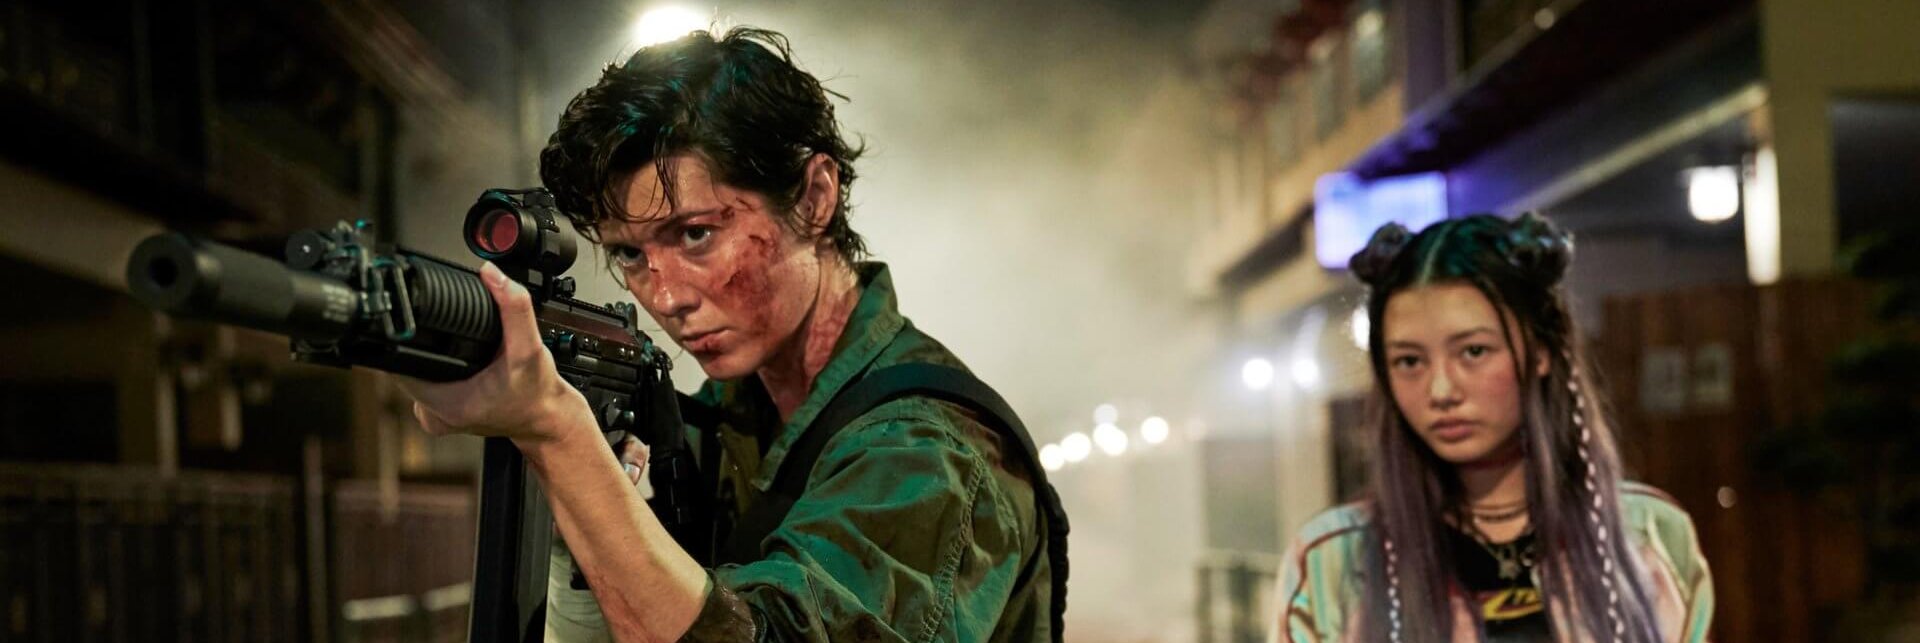 Mary Elizabeth Winstead estrela novo filme de ação da Netflix; assista ao trailer de ‘Kate’